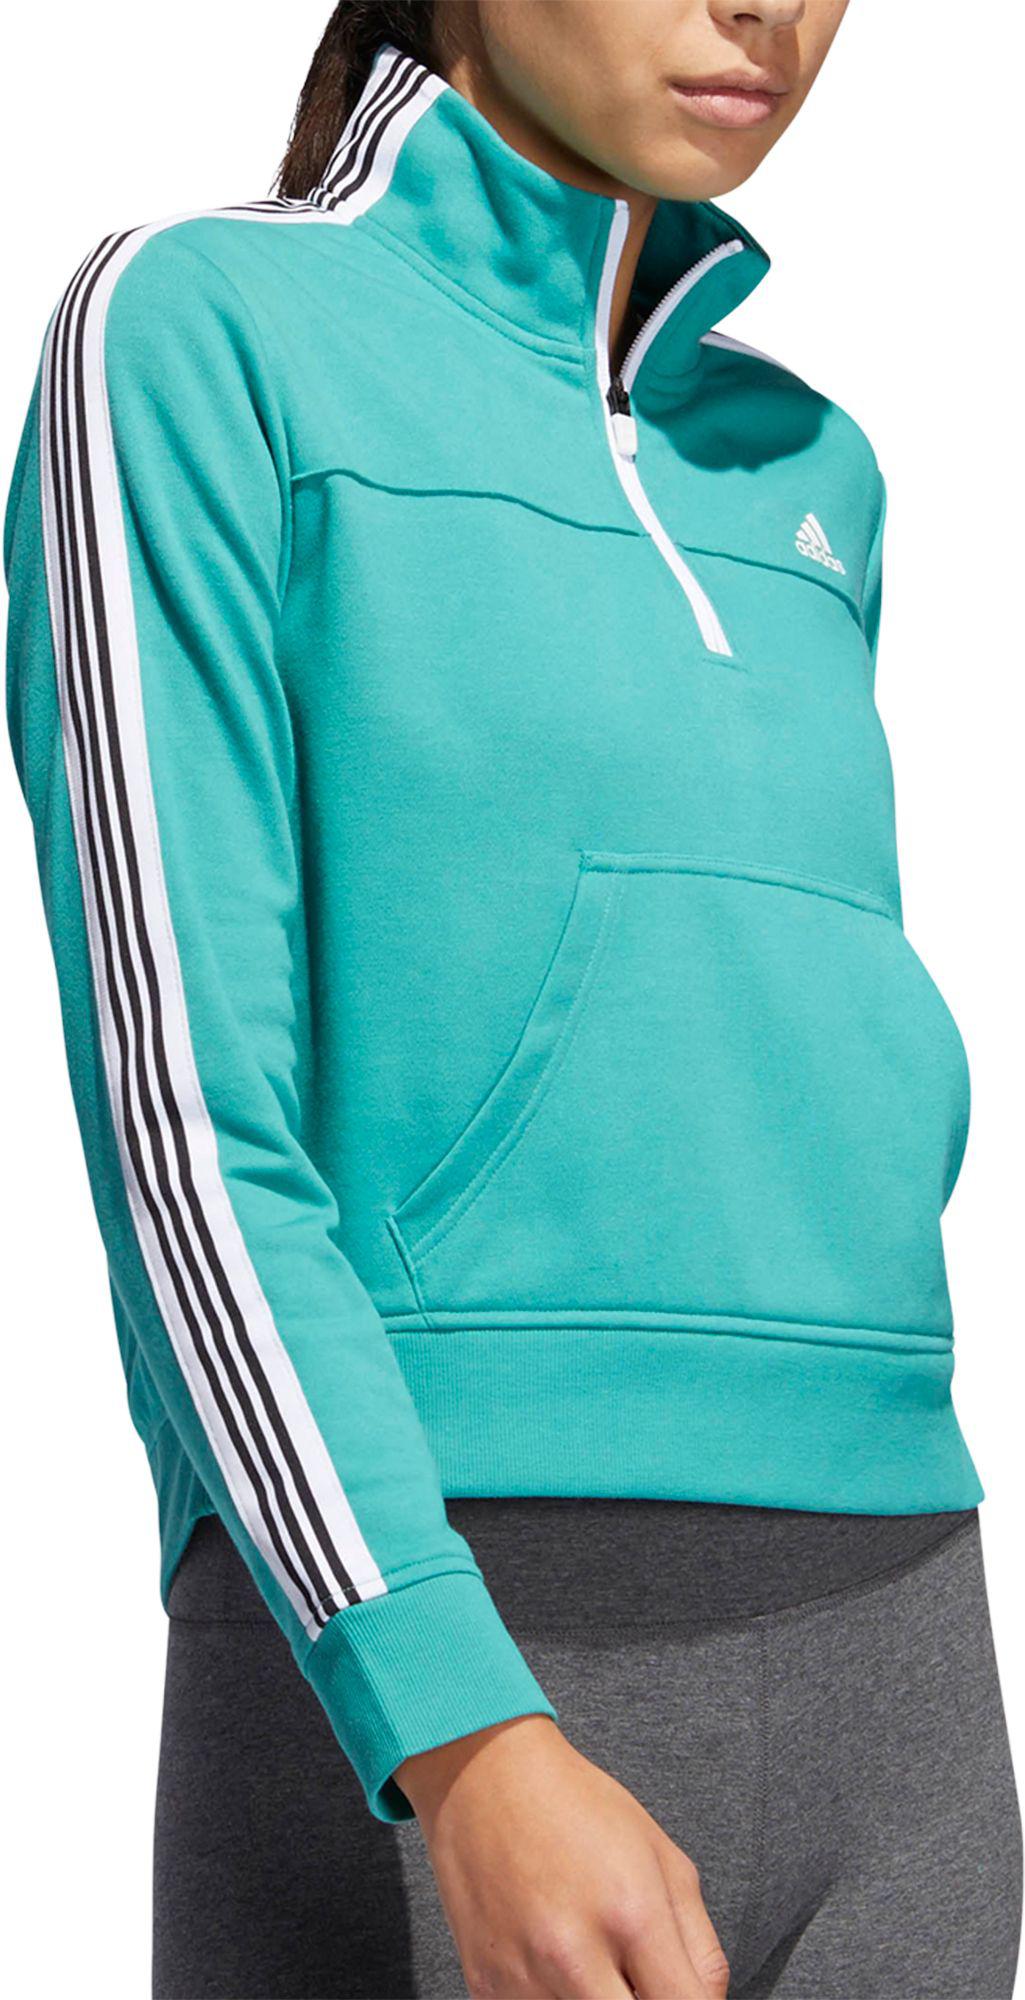 adidas women's changeover half zip sweatshirt